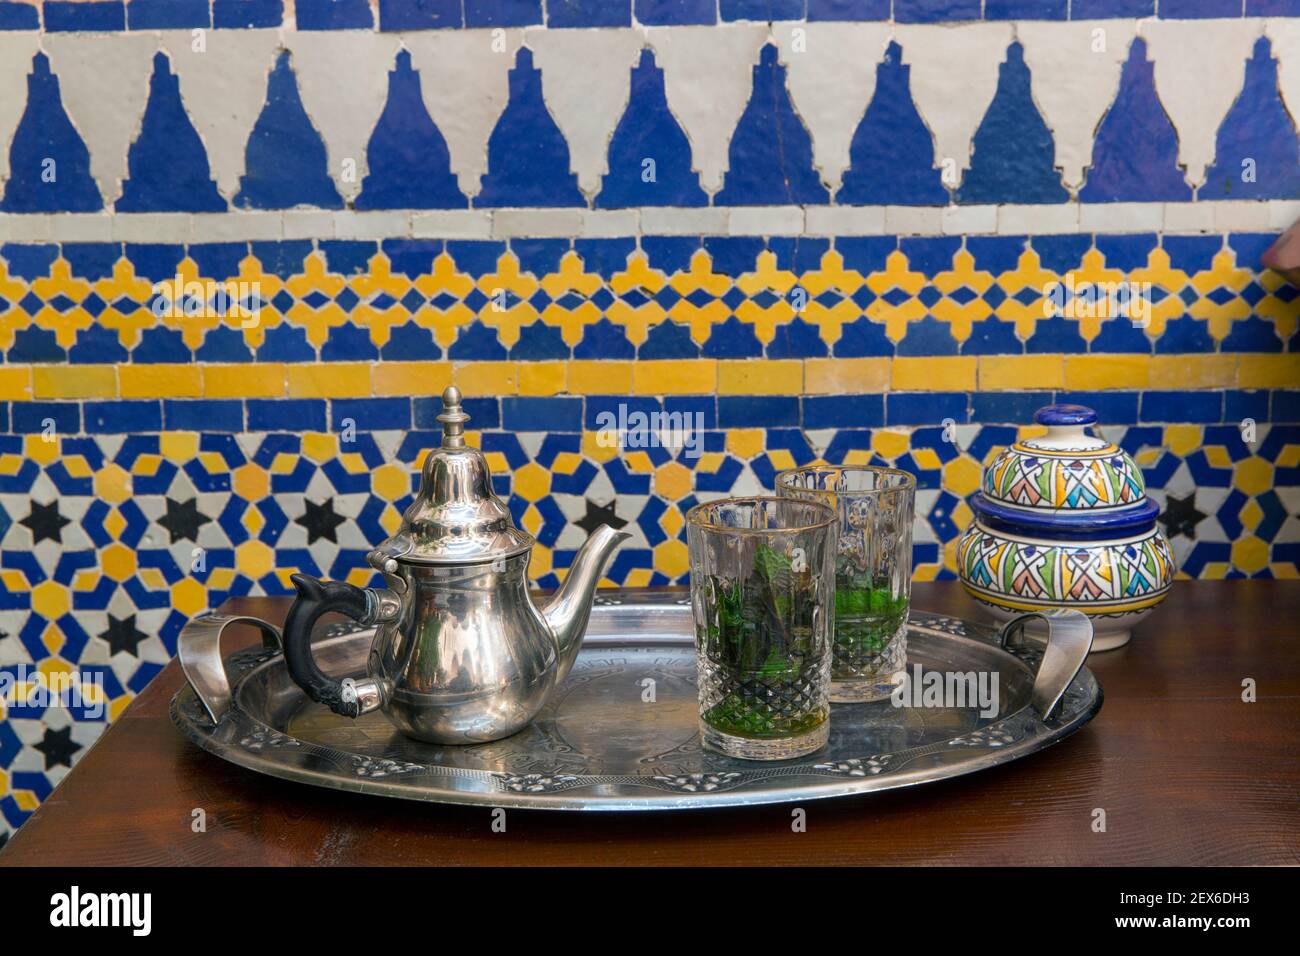 il tè alla menta viene servito su un vassoio d'argento contro un parete piastrellata Foto Stock